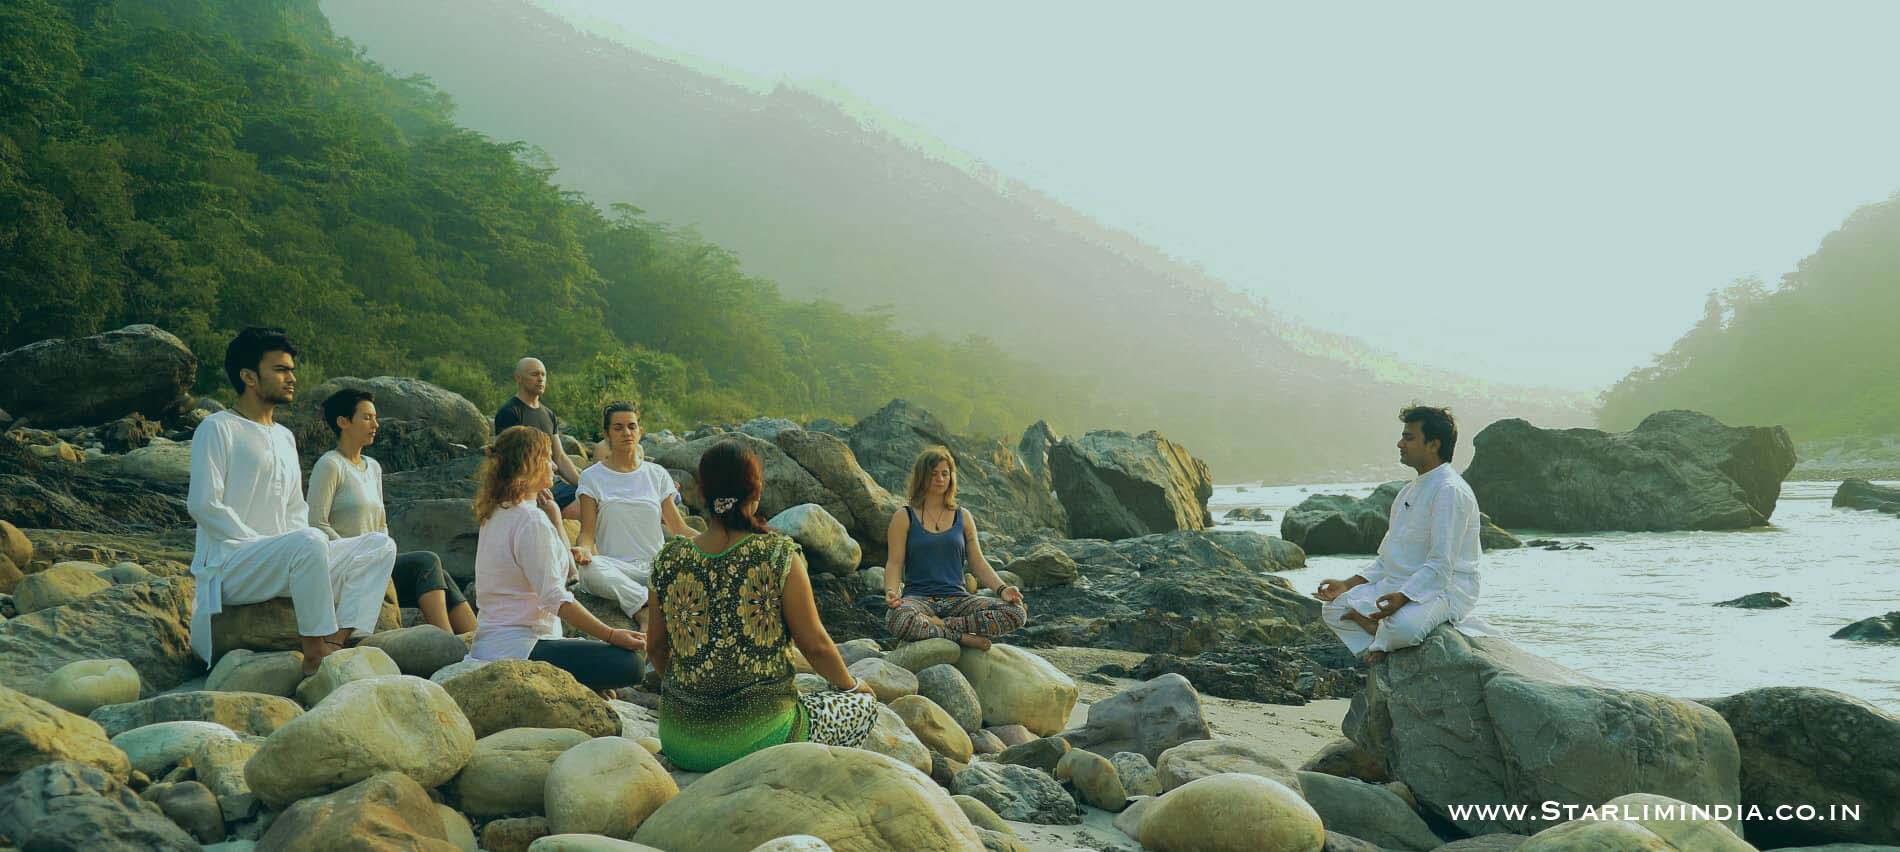 Ayurveda Retreats in India - Maa Yoga Ashram